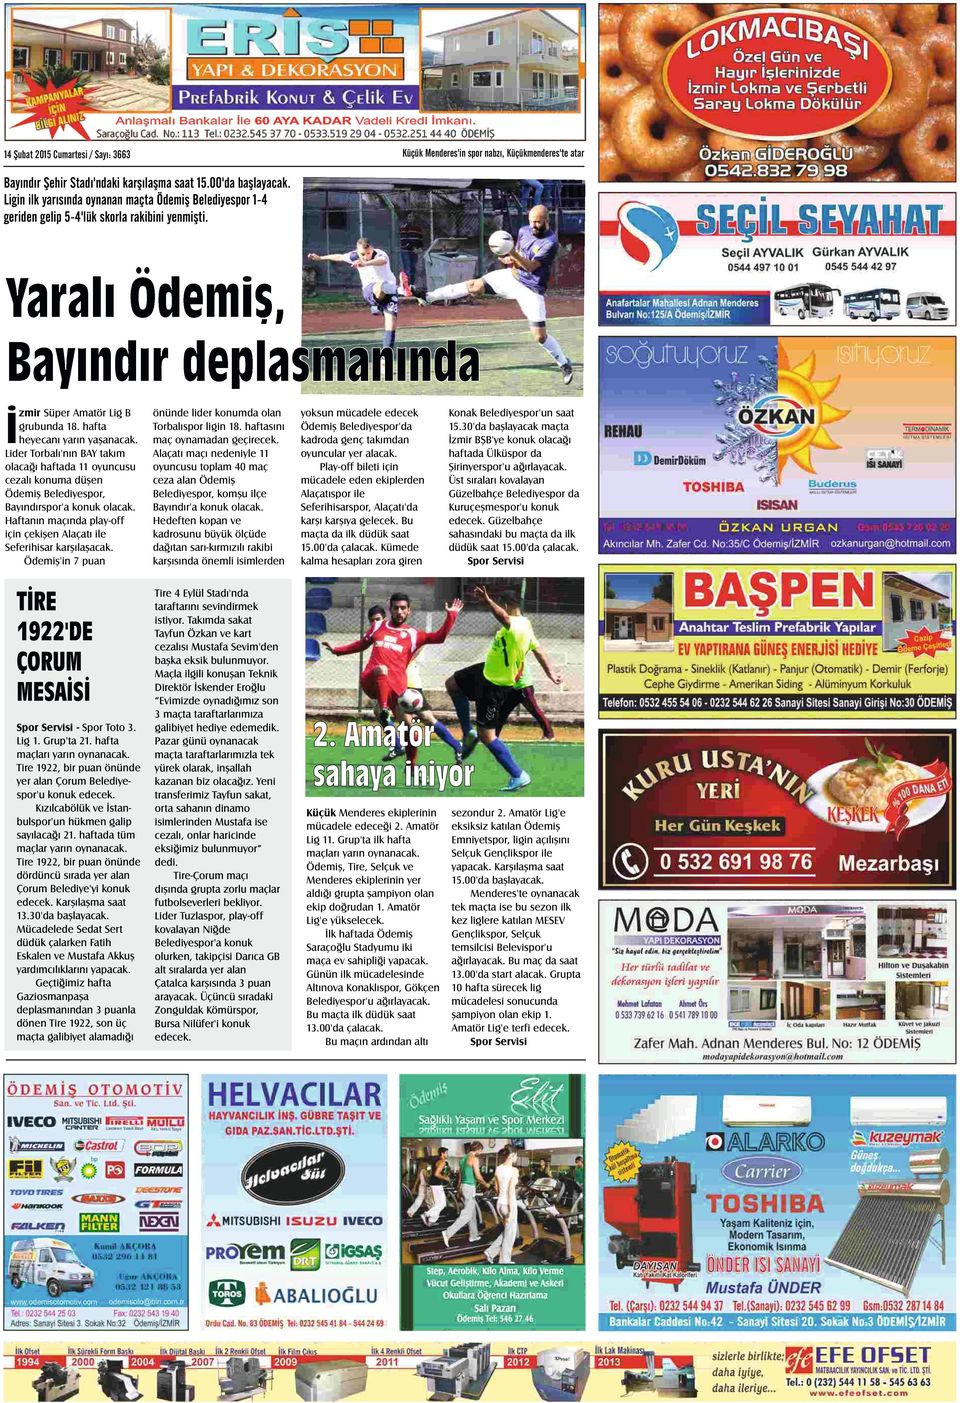 Lider Torbalı'nın BAY takım olacağı haftada 11 oyuncusu cezalı konuma düşen Ödemiş Belediyespor, Bayındırspor'a konuk olacak.